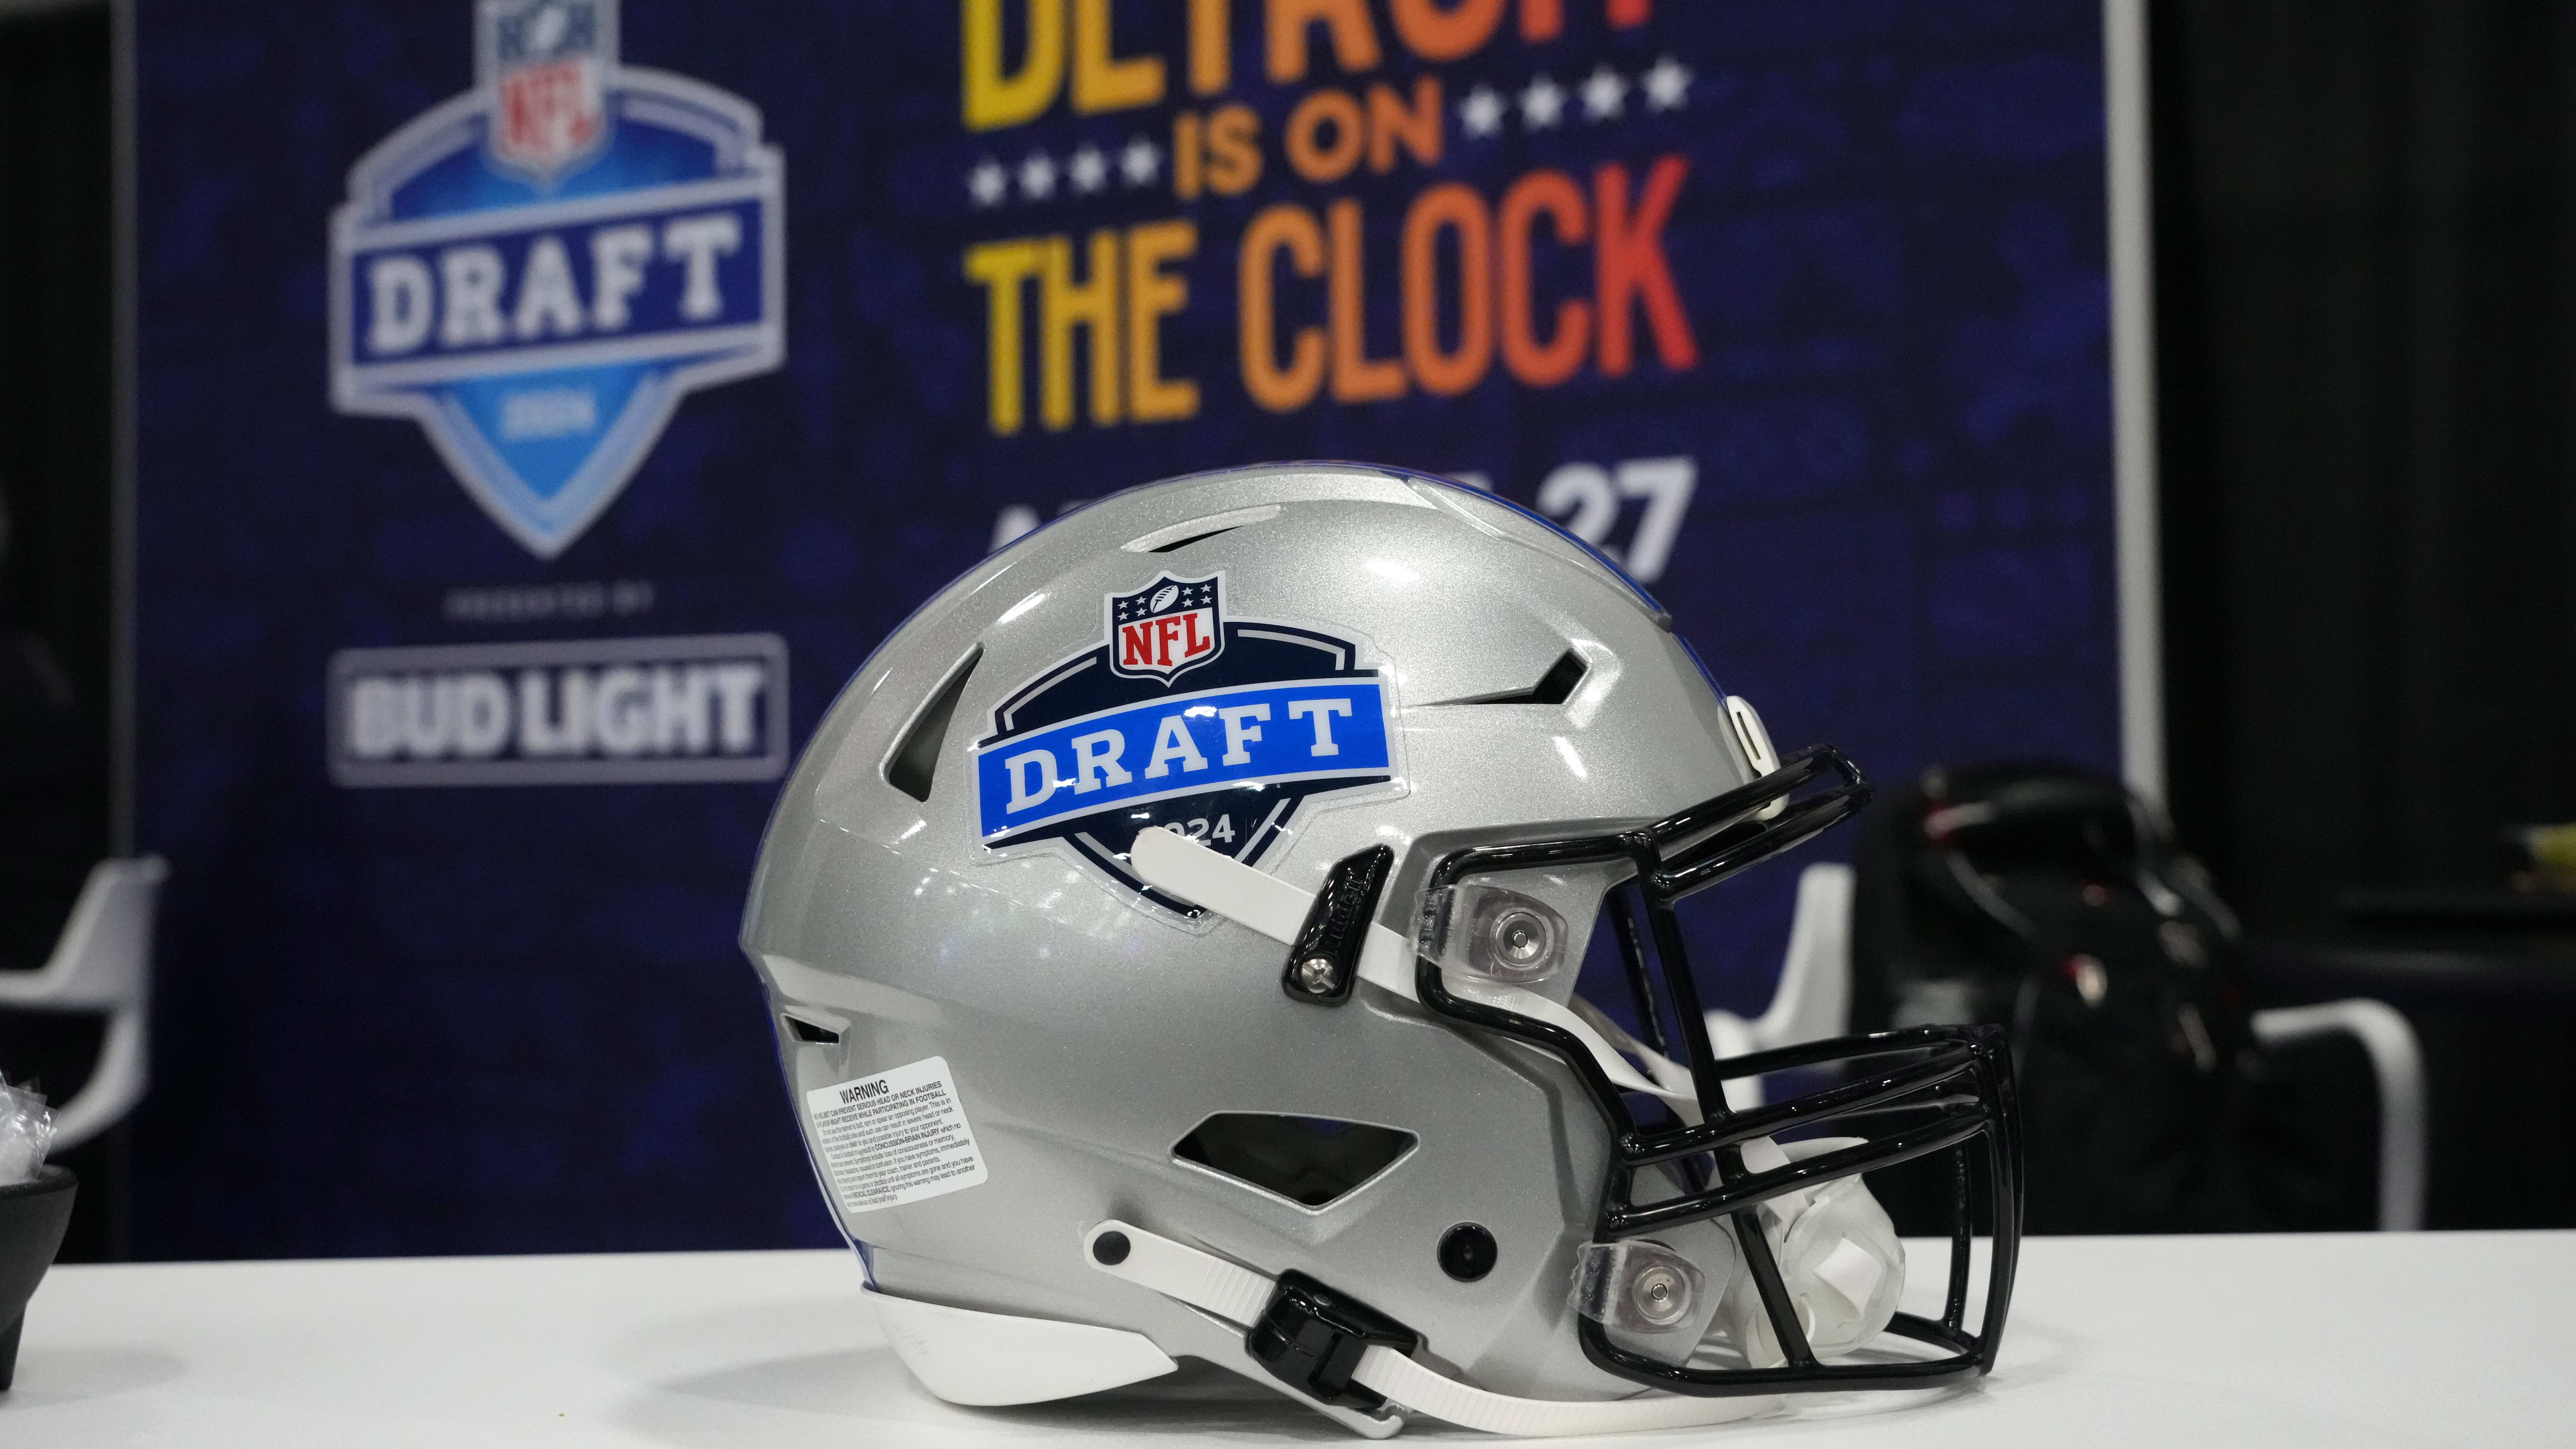 2024 NFL Draft in Detroit, New York Giants